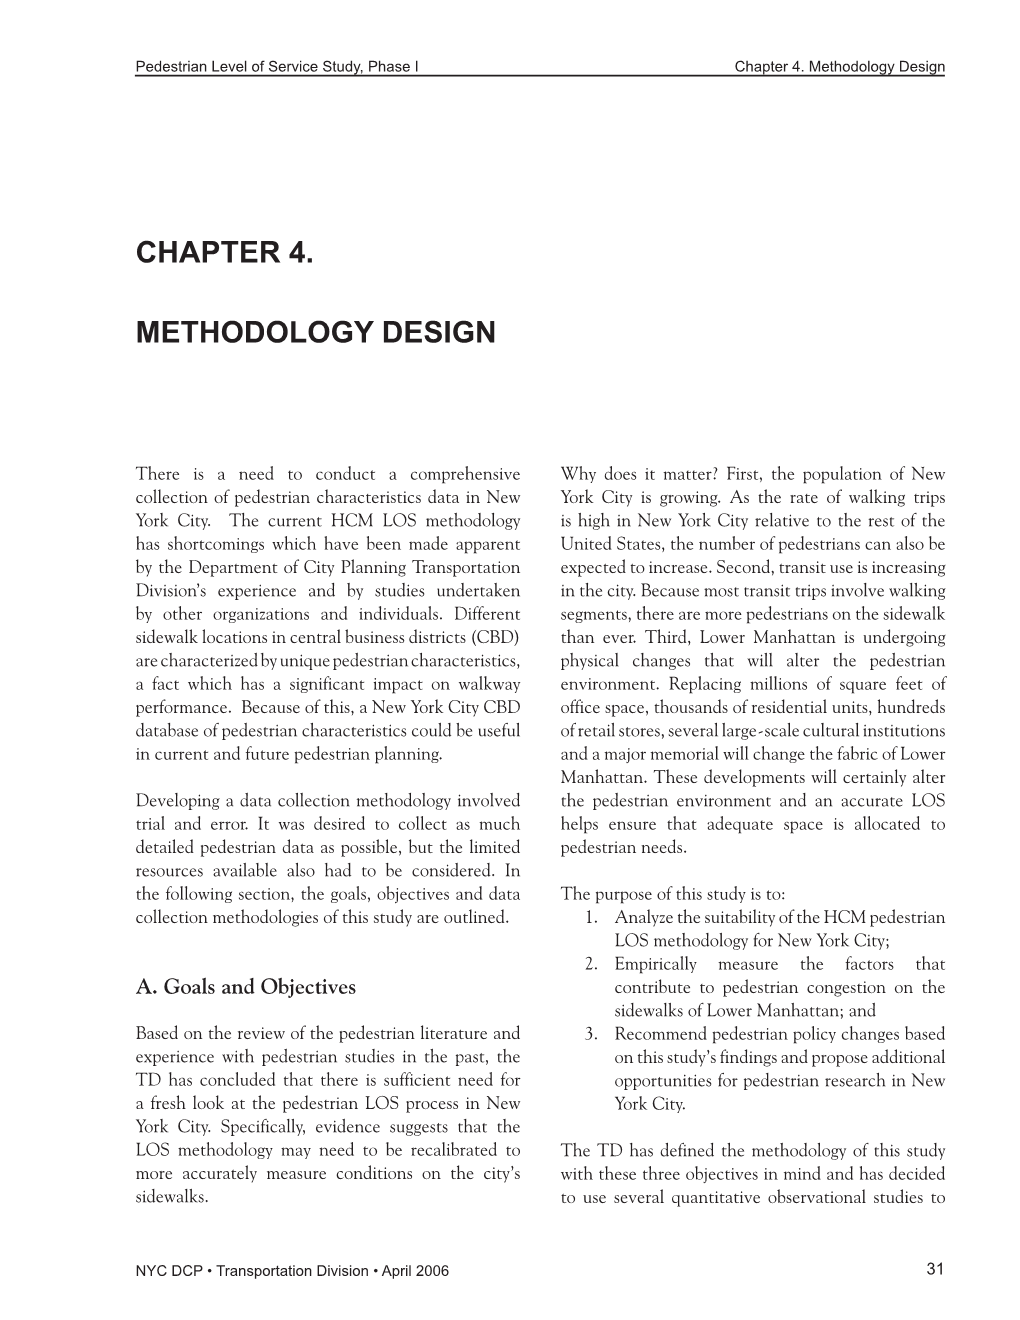 Chapter 4: Methodology Design